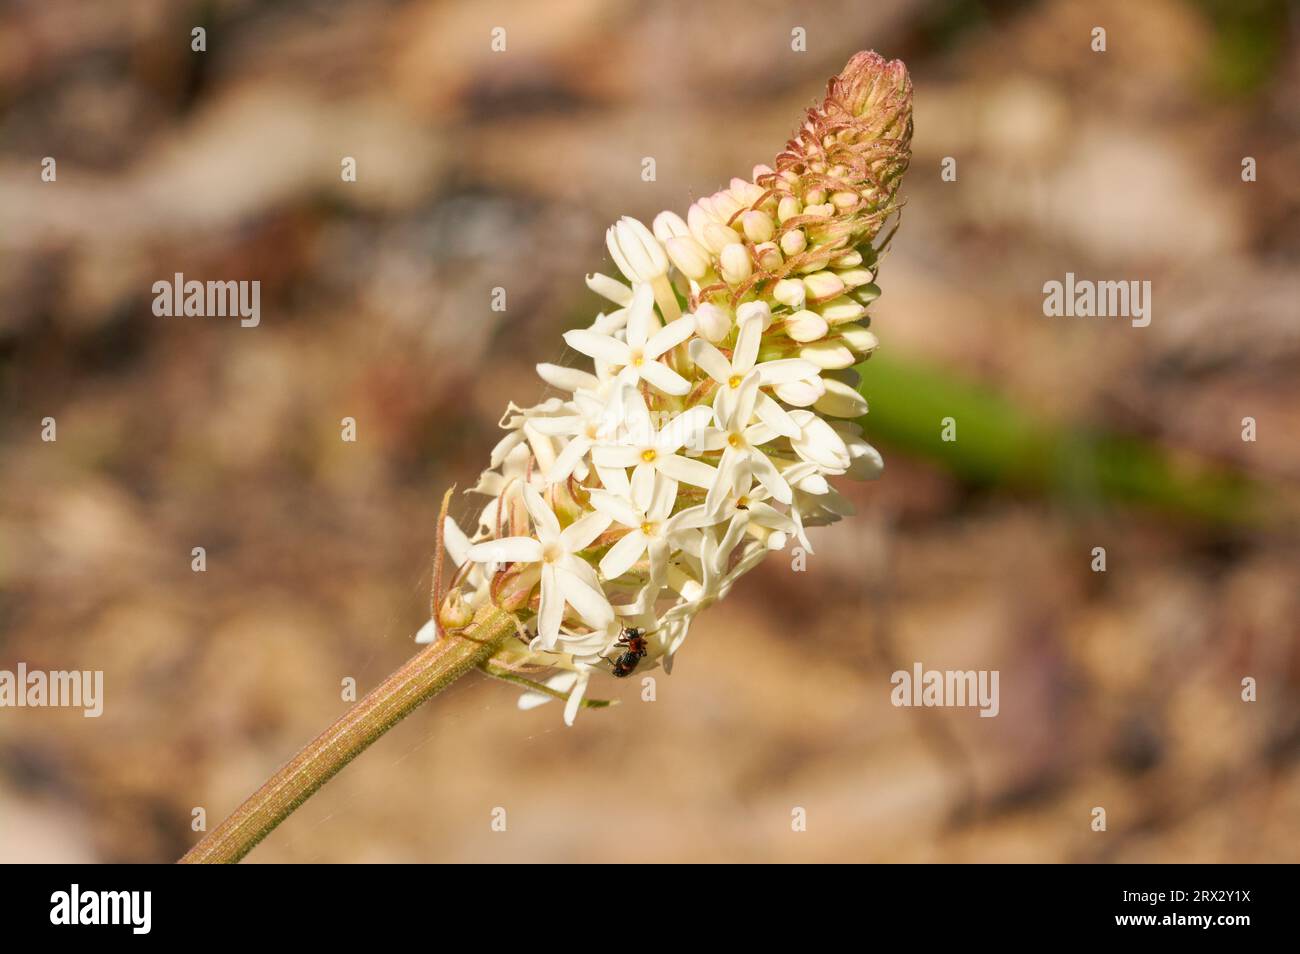 Lysinema sp., una especie de flores silvestres endémica del suroeste de Australia Occidental con un pequeño escarabajo. Foto de stock